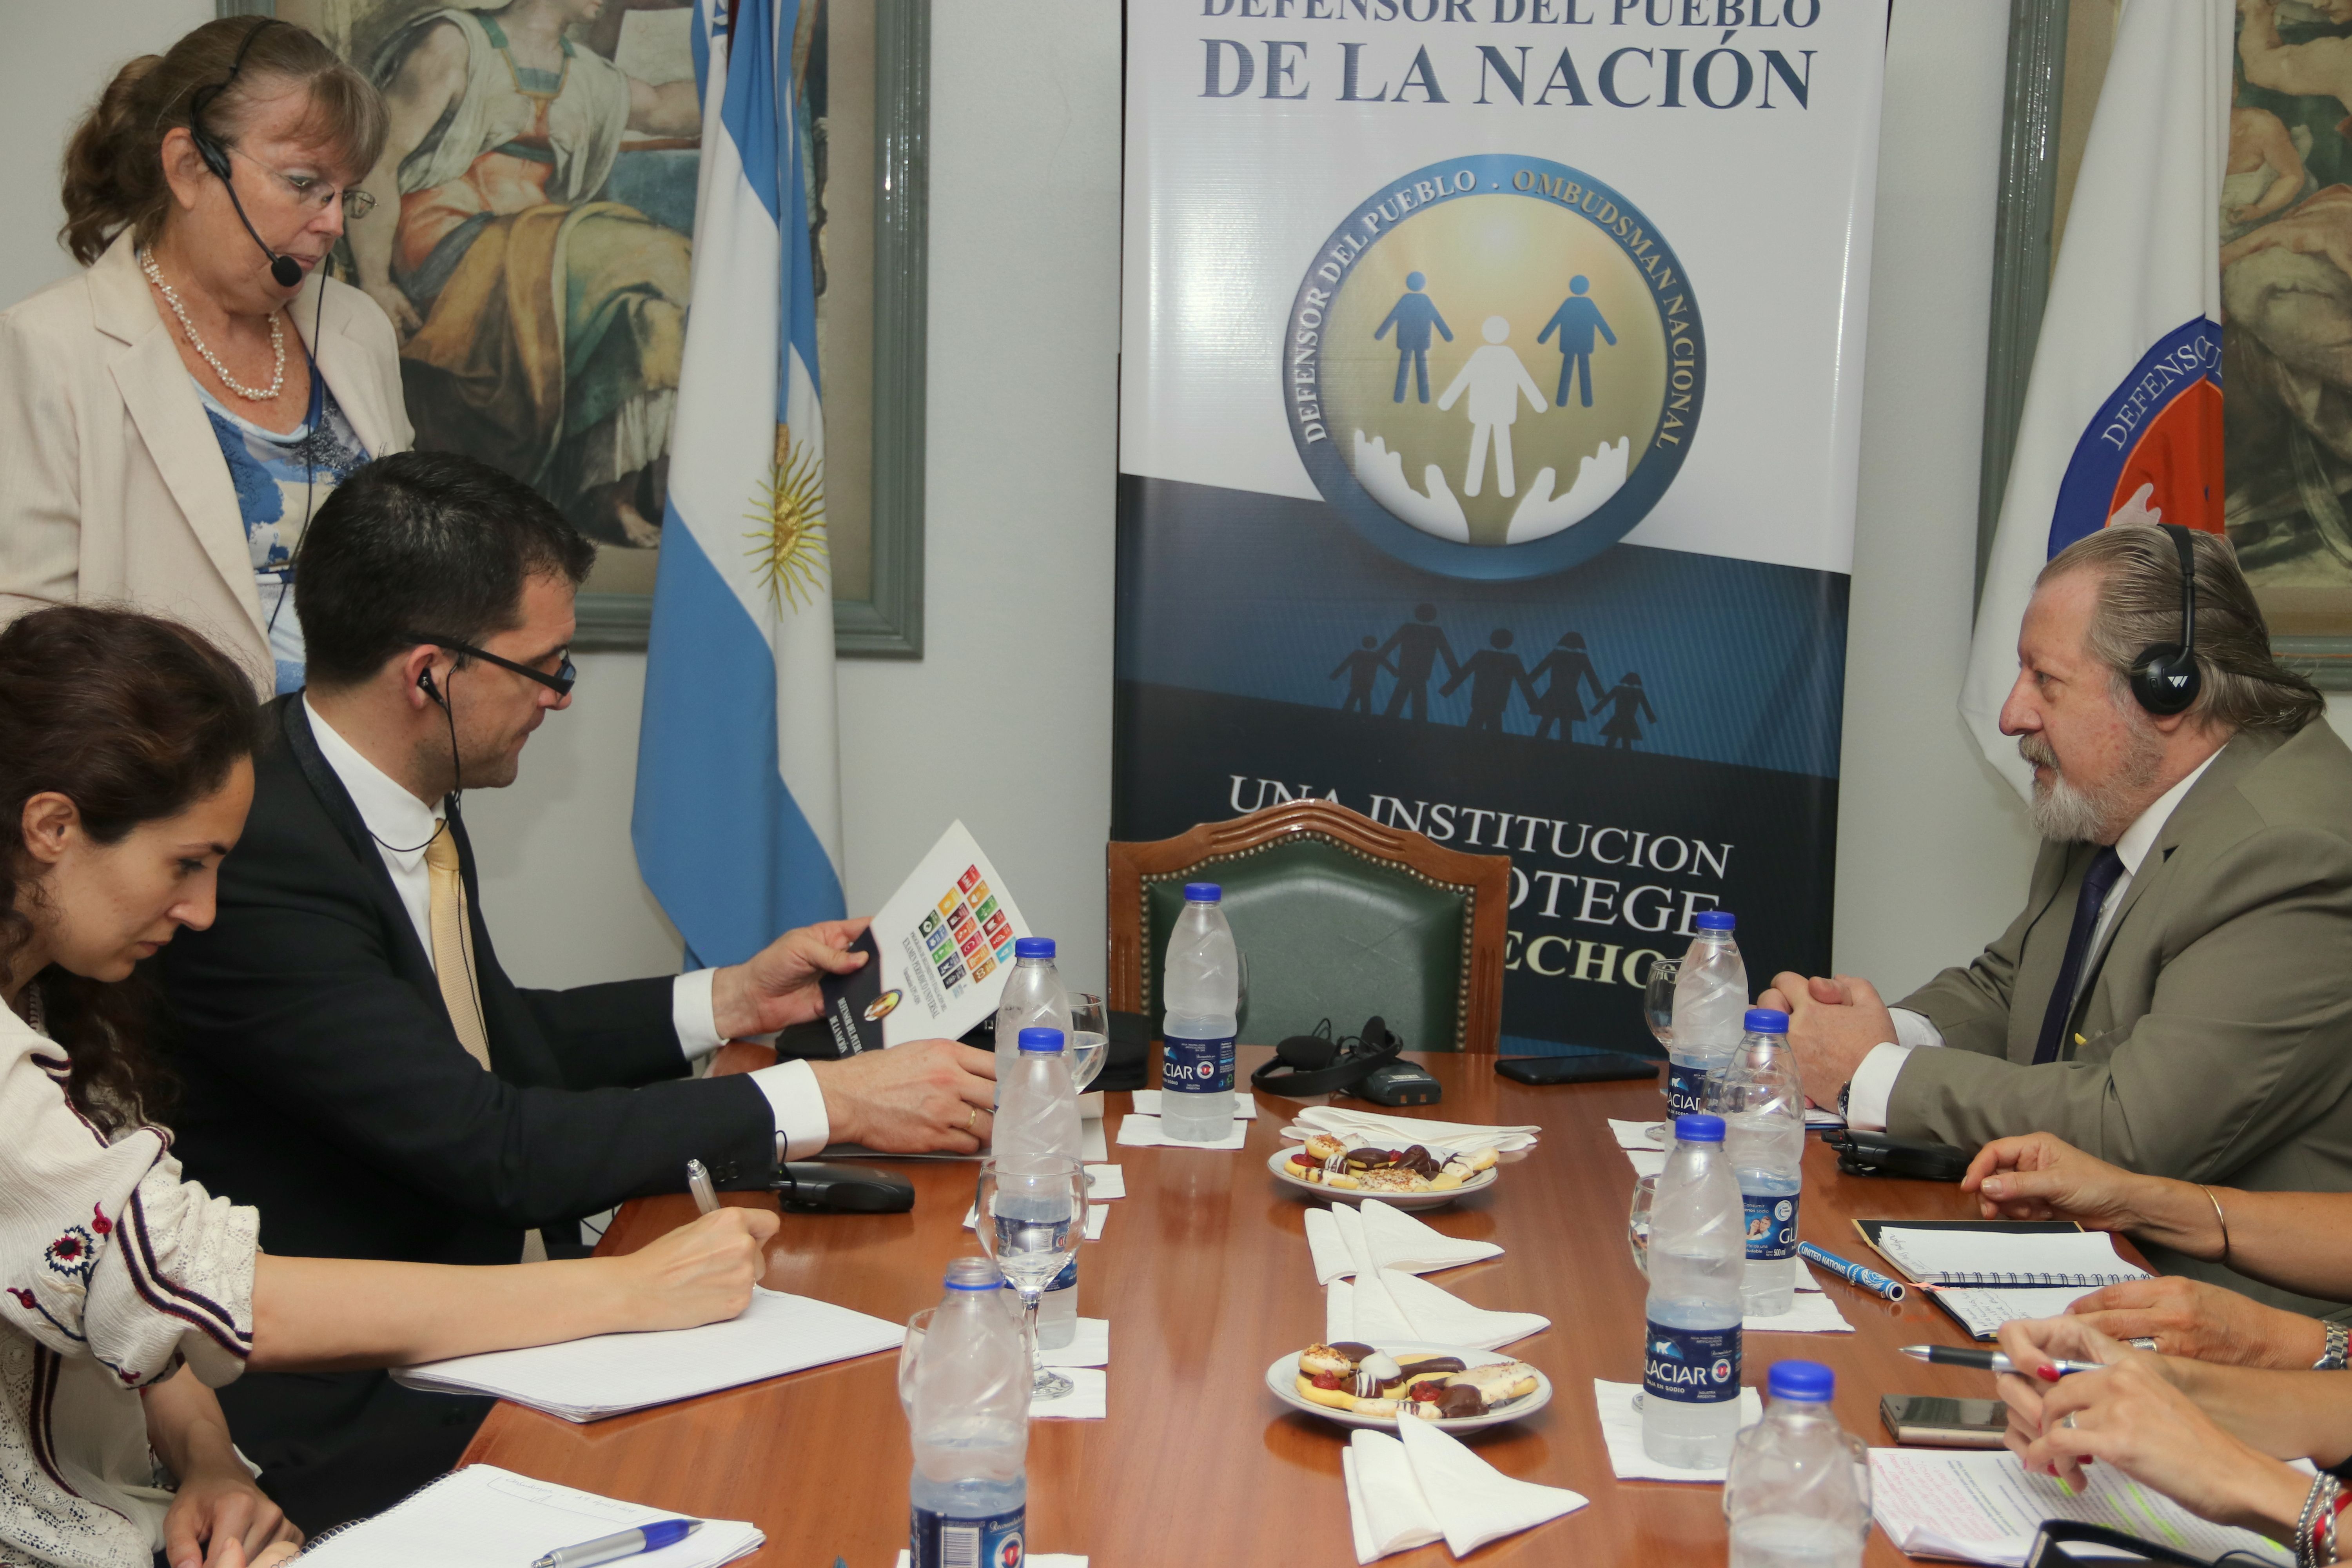 El Relator Especial de Naciones Unidas sobre Torturas visitó la Defensoría del Pueblo de la Nación